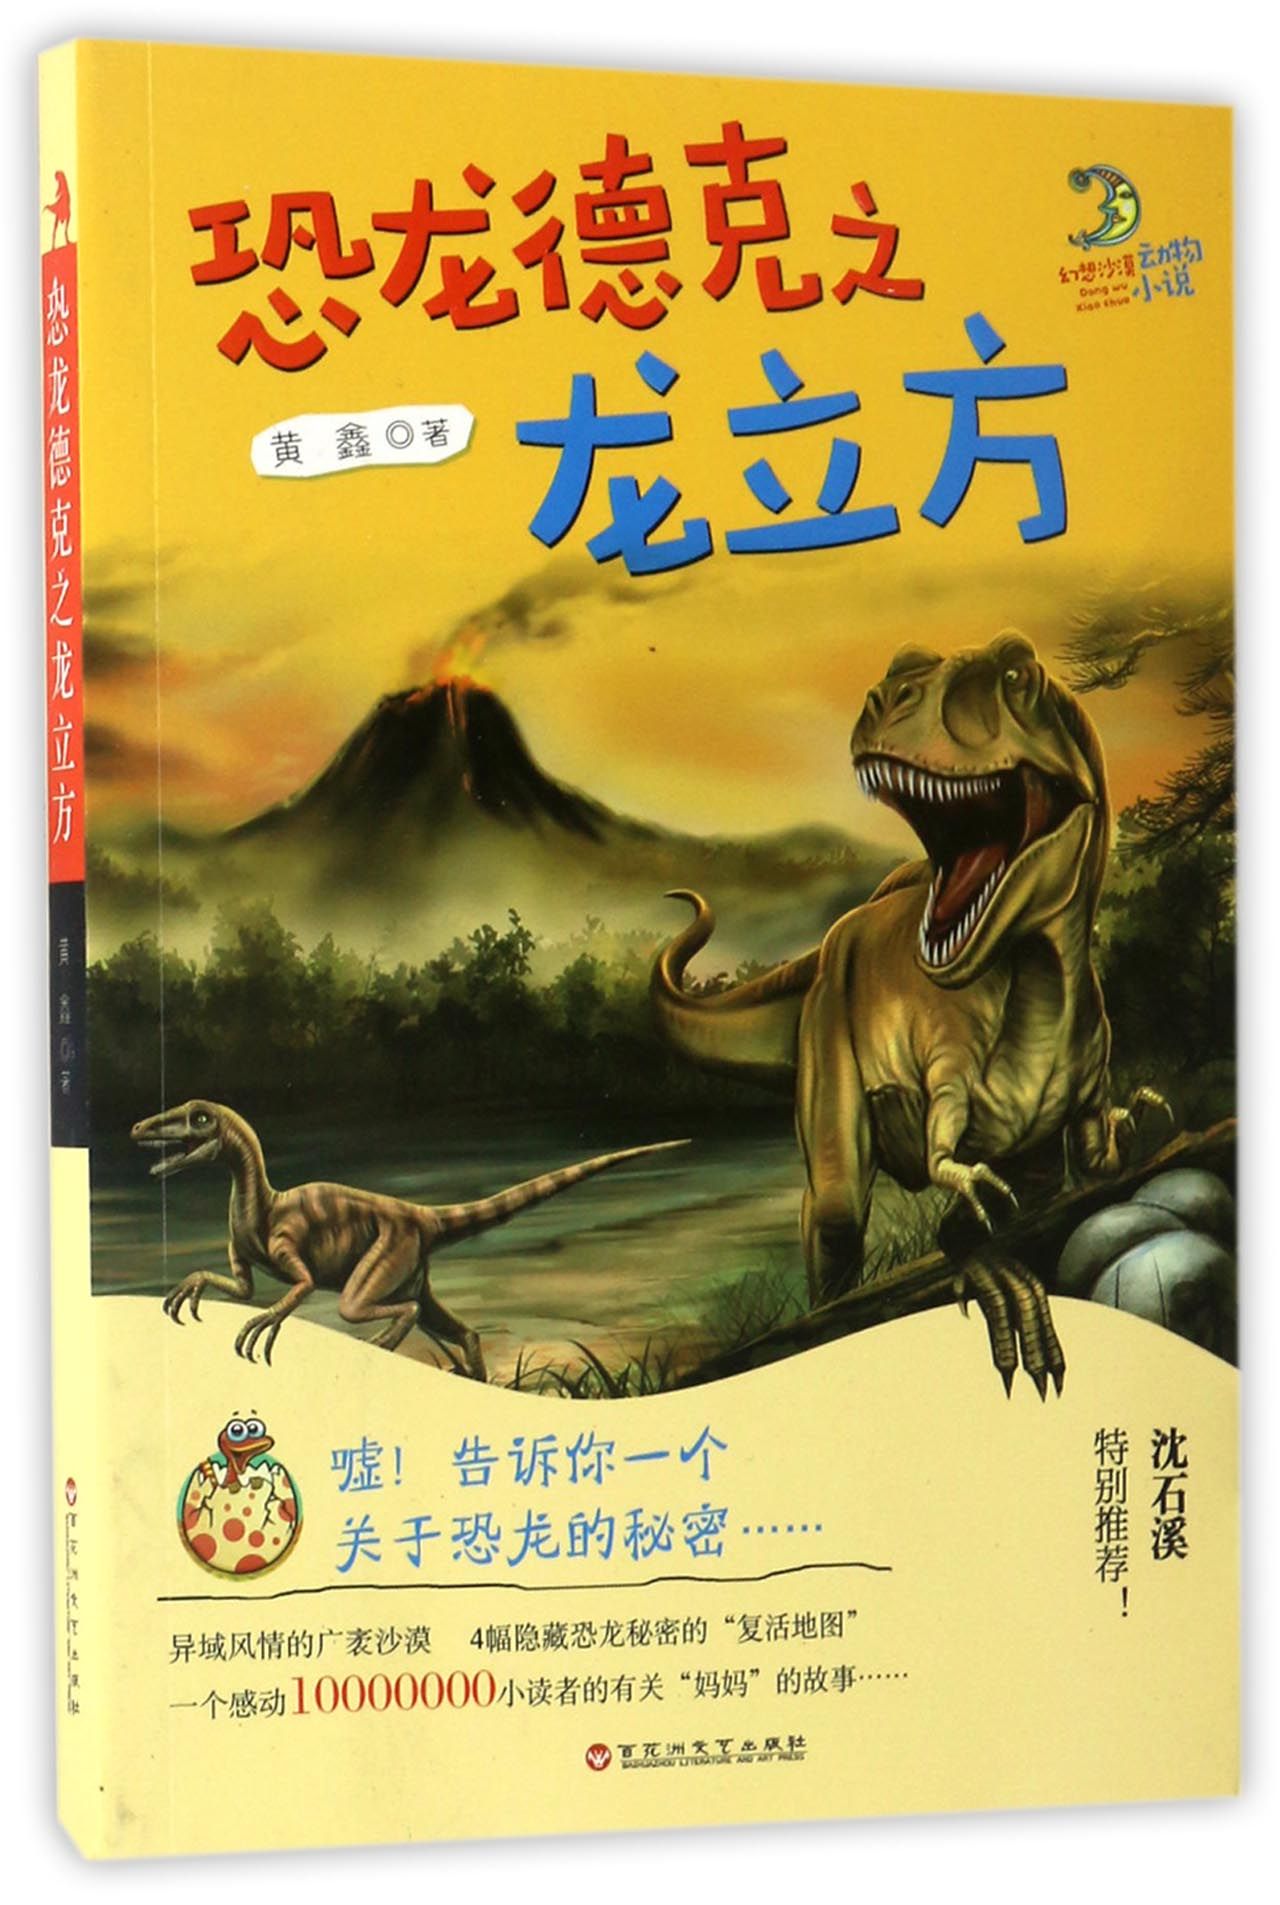 恐龙德克之龙立方 儿童成长文学作品 作家黄鑫用他擅长的文字将这温暖又充满奇幻色彩的故事唯美呈现 小学生课外阅读书籍